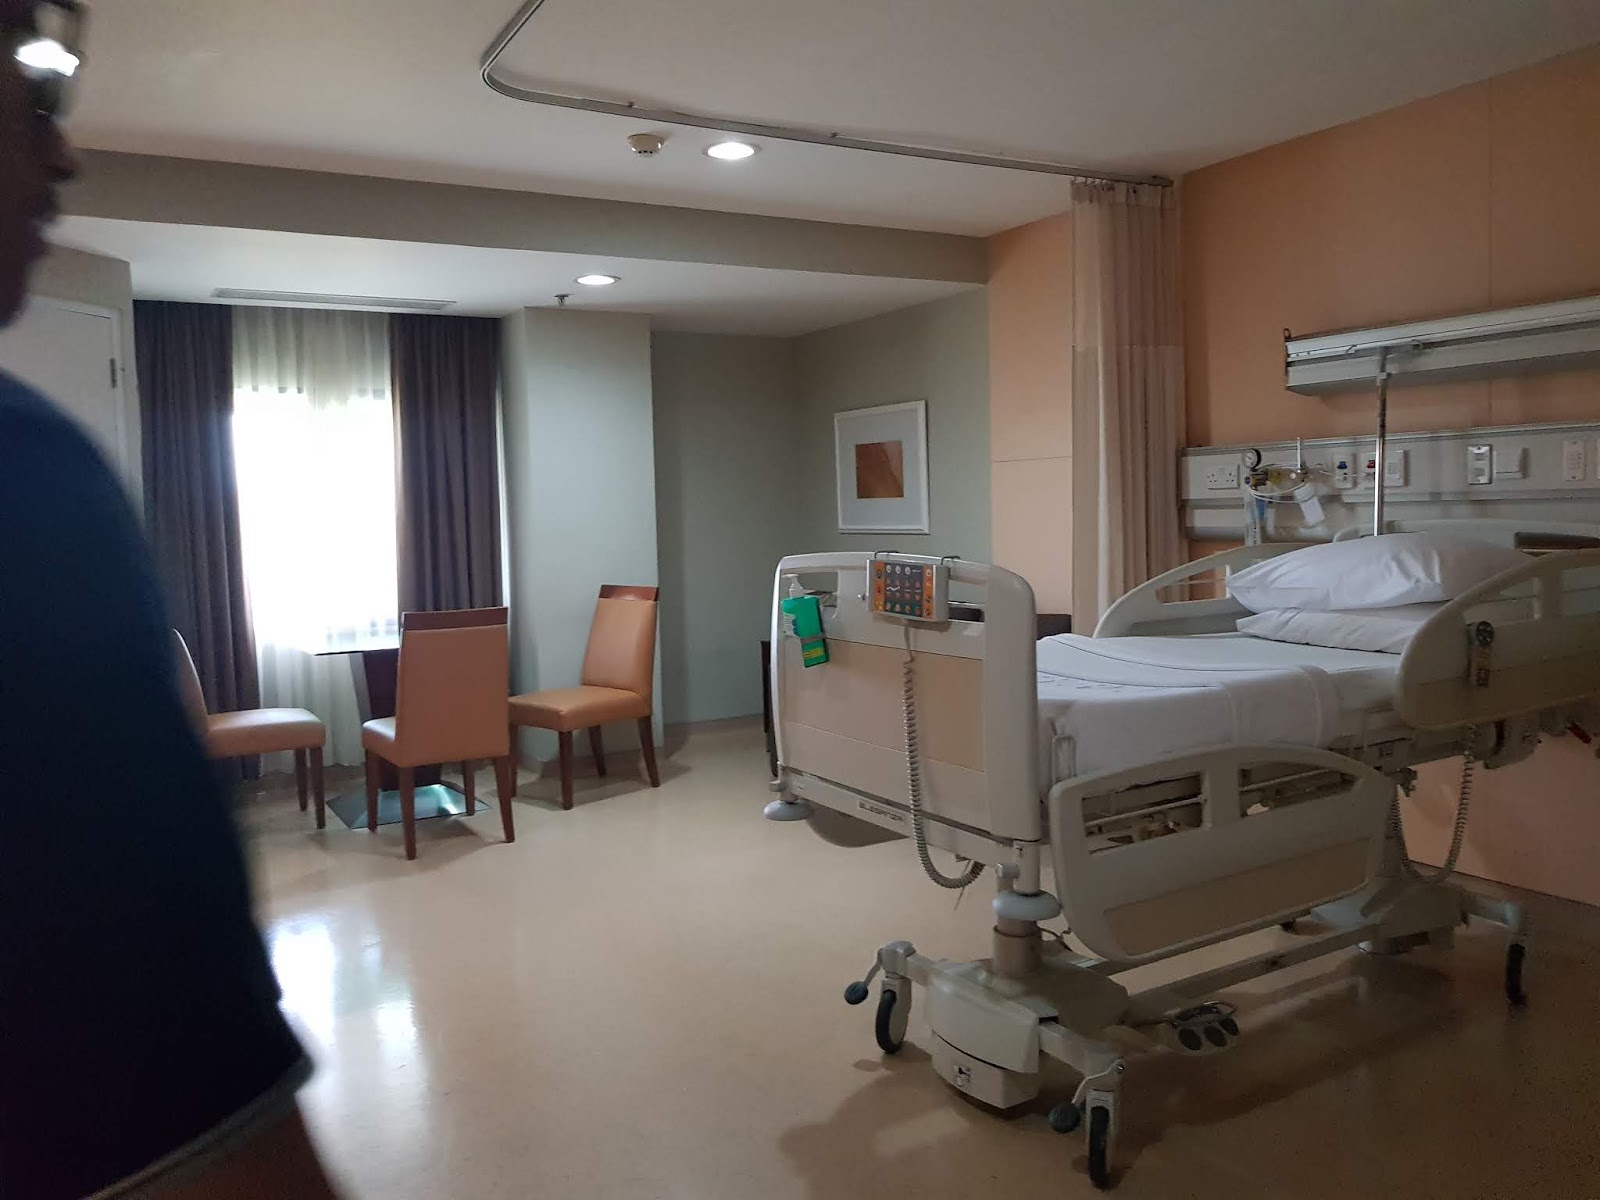 Hospital Tour Rumah Sakit Pondok Indah - Pondok Indah 